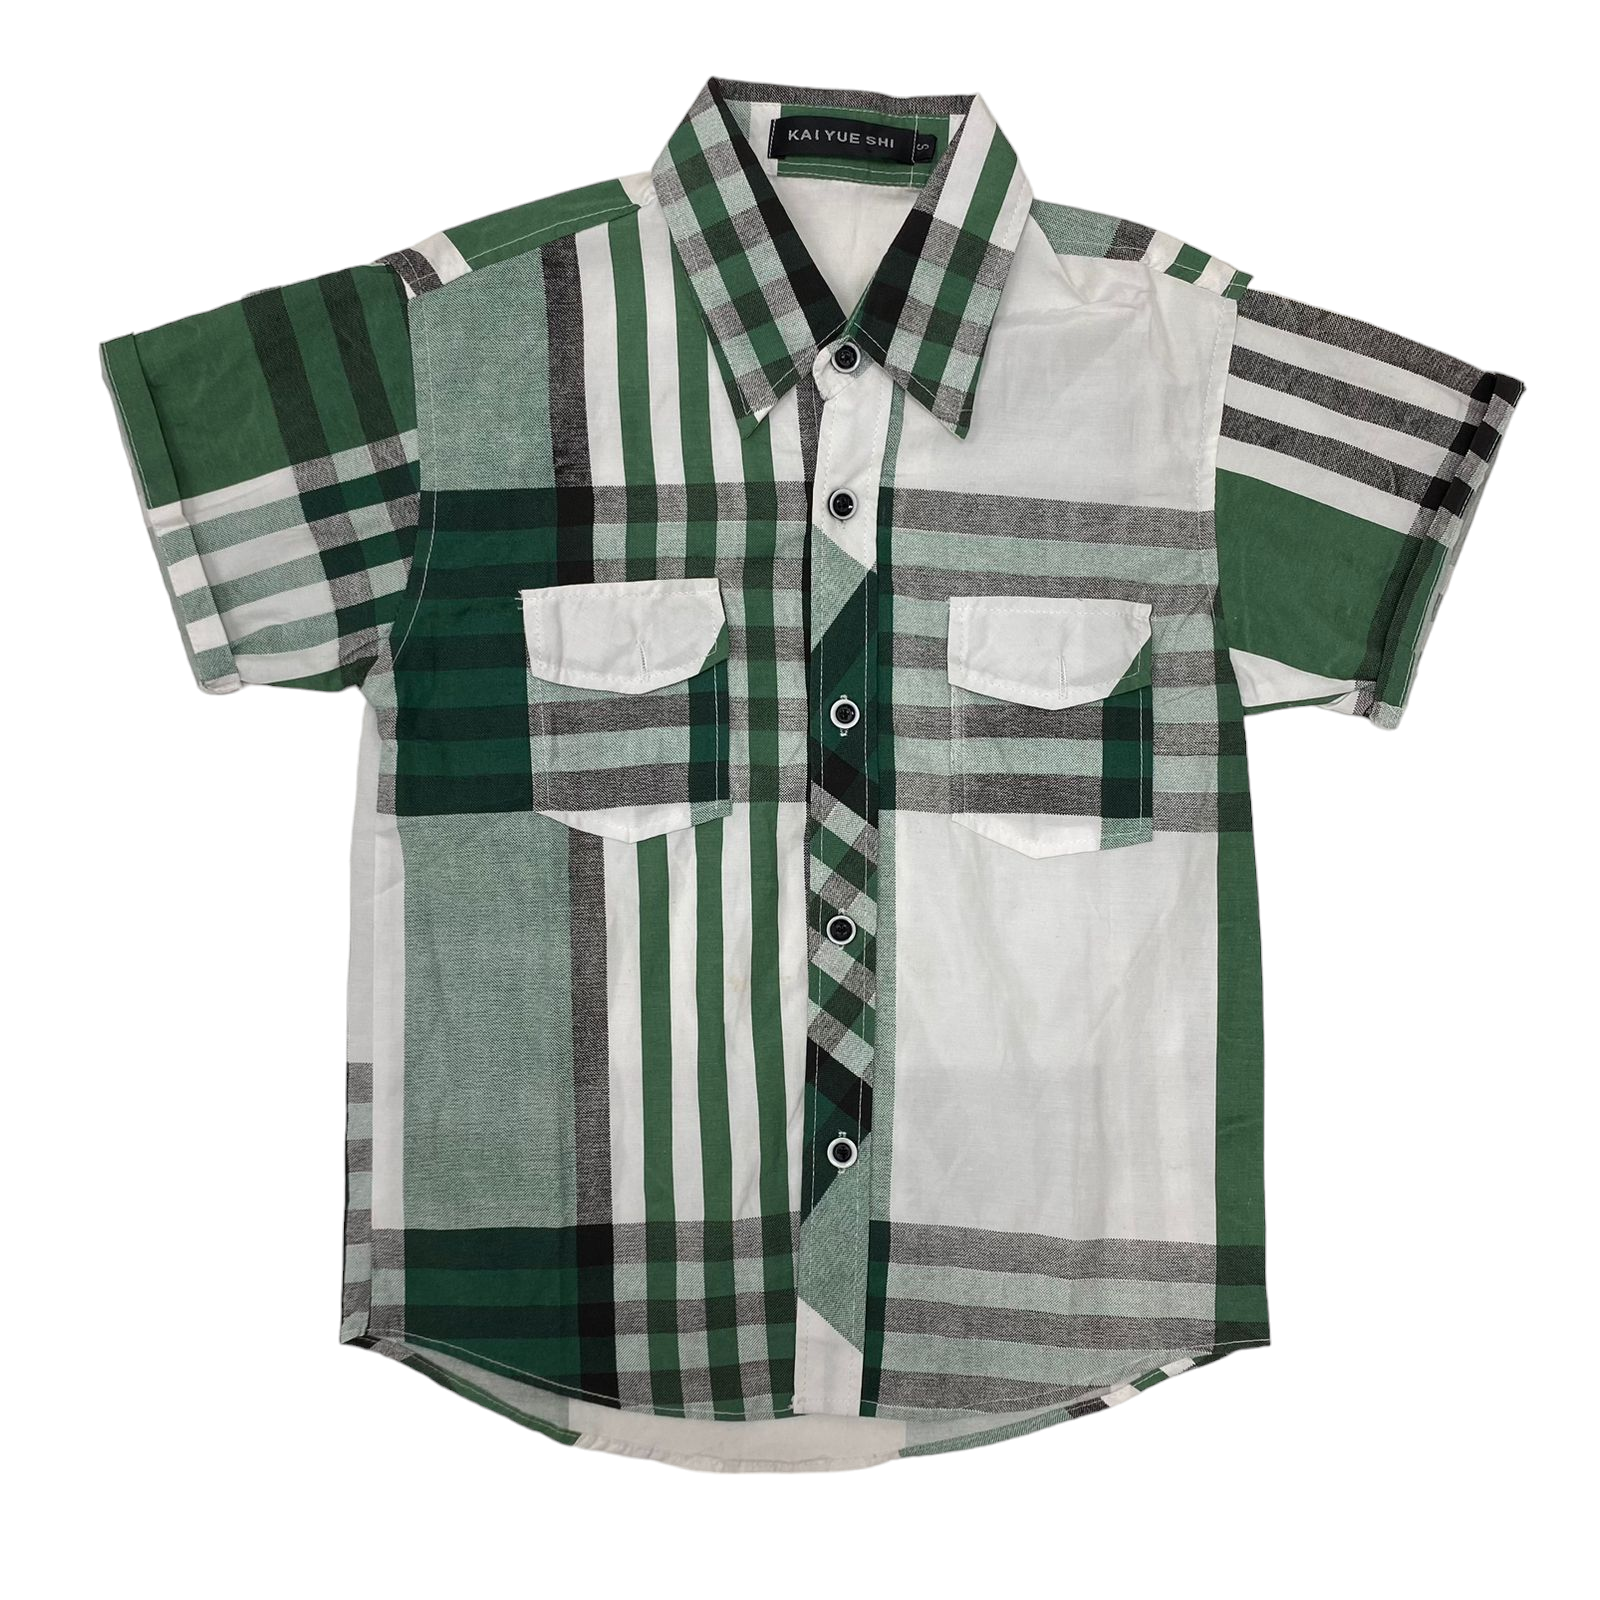 Camisa con rayas y cuadros verde blanco y negro